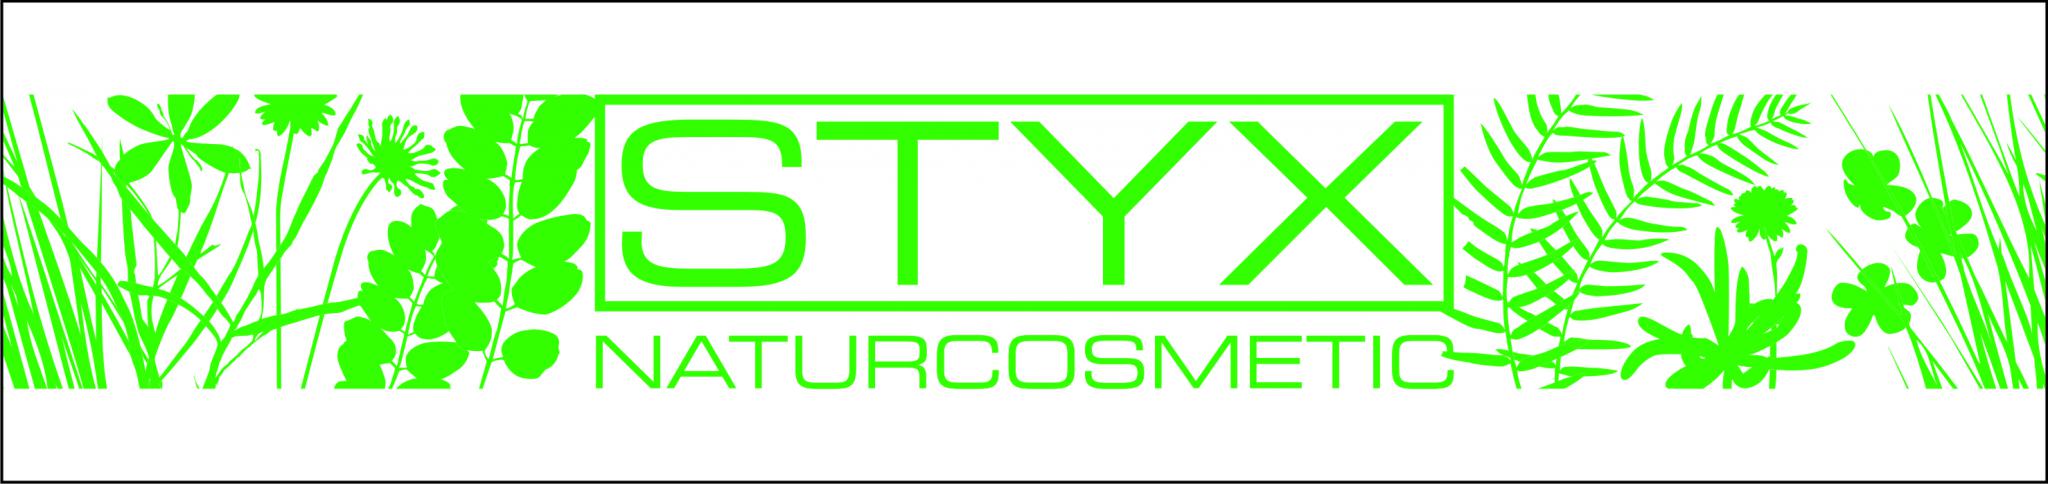 STYX naturcosmetic, Магазин натуральной косметики и Эфирных масел из Австрии